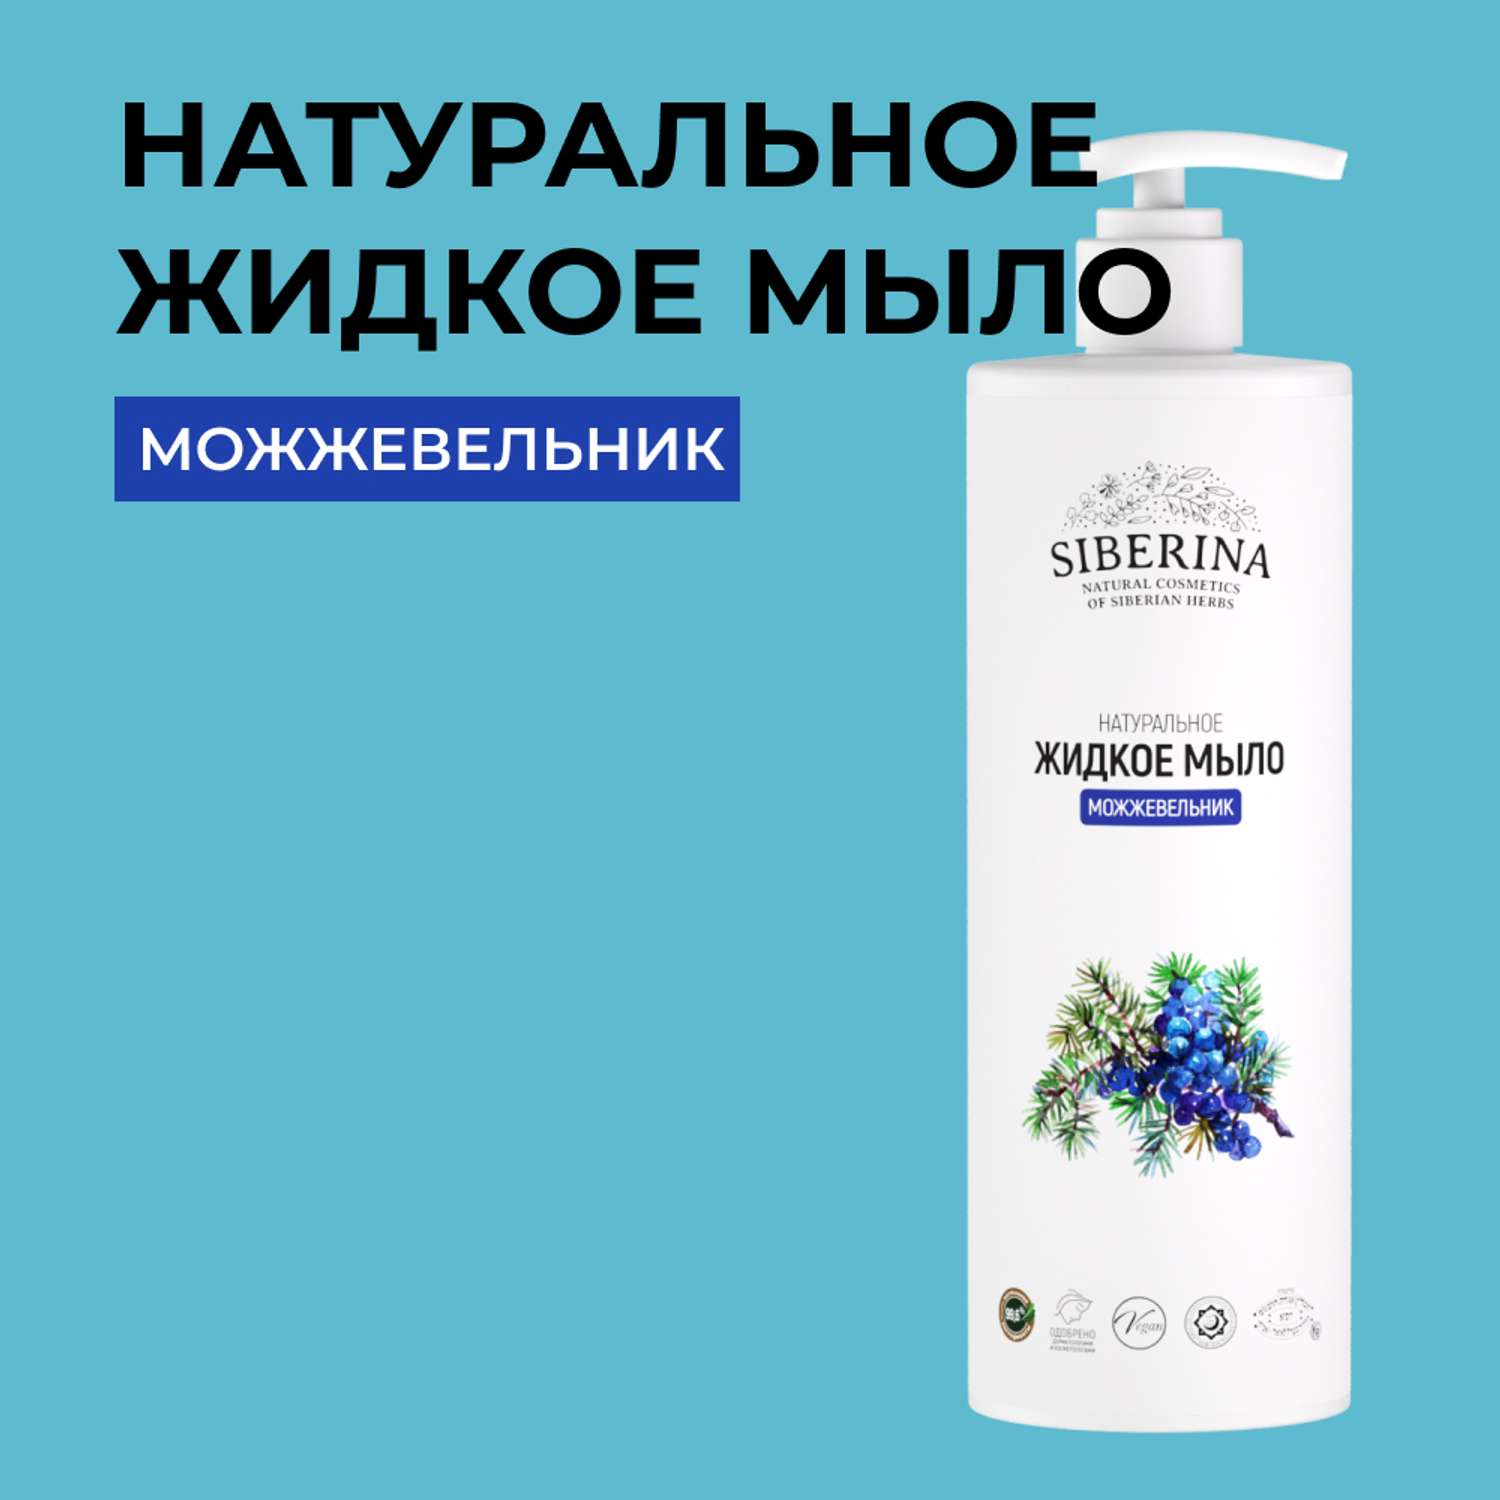 Жидкое мыло Siberina натуральное «Можжевельник» противовоспалительное и очищающее 400 мл - фото 1